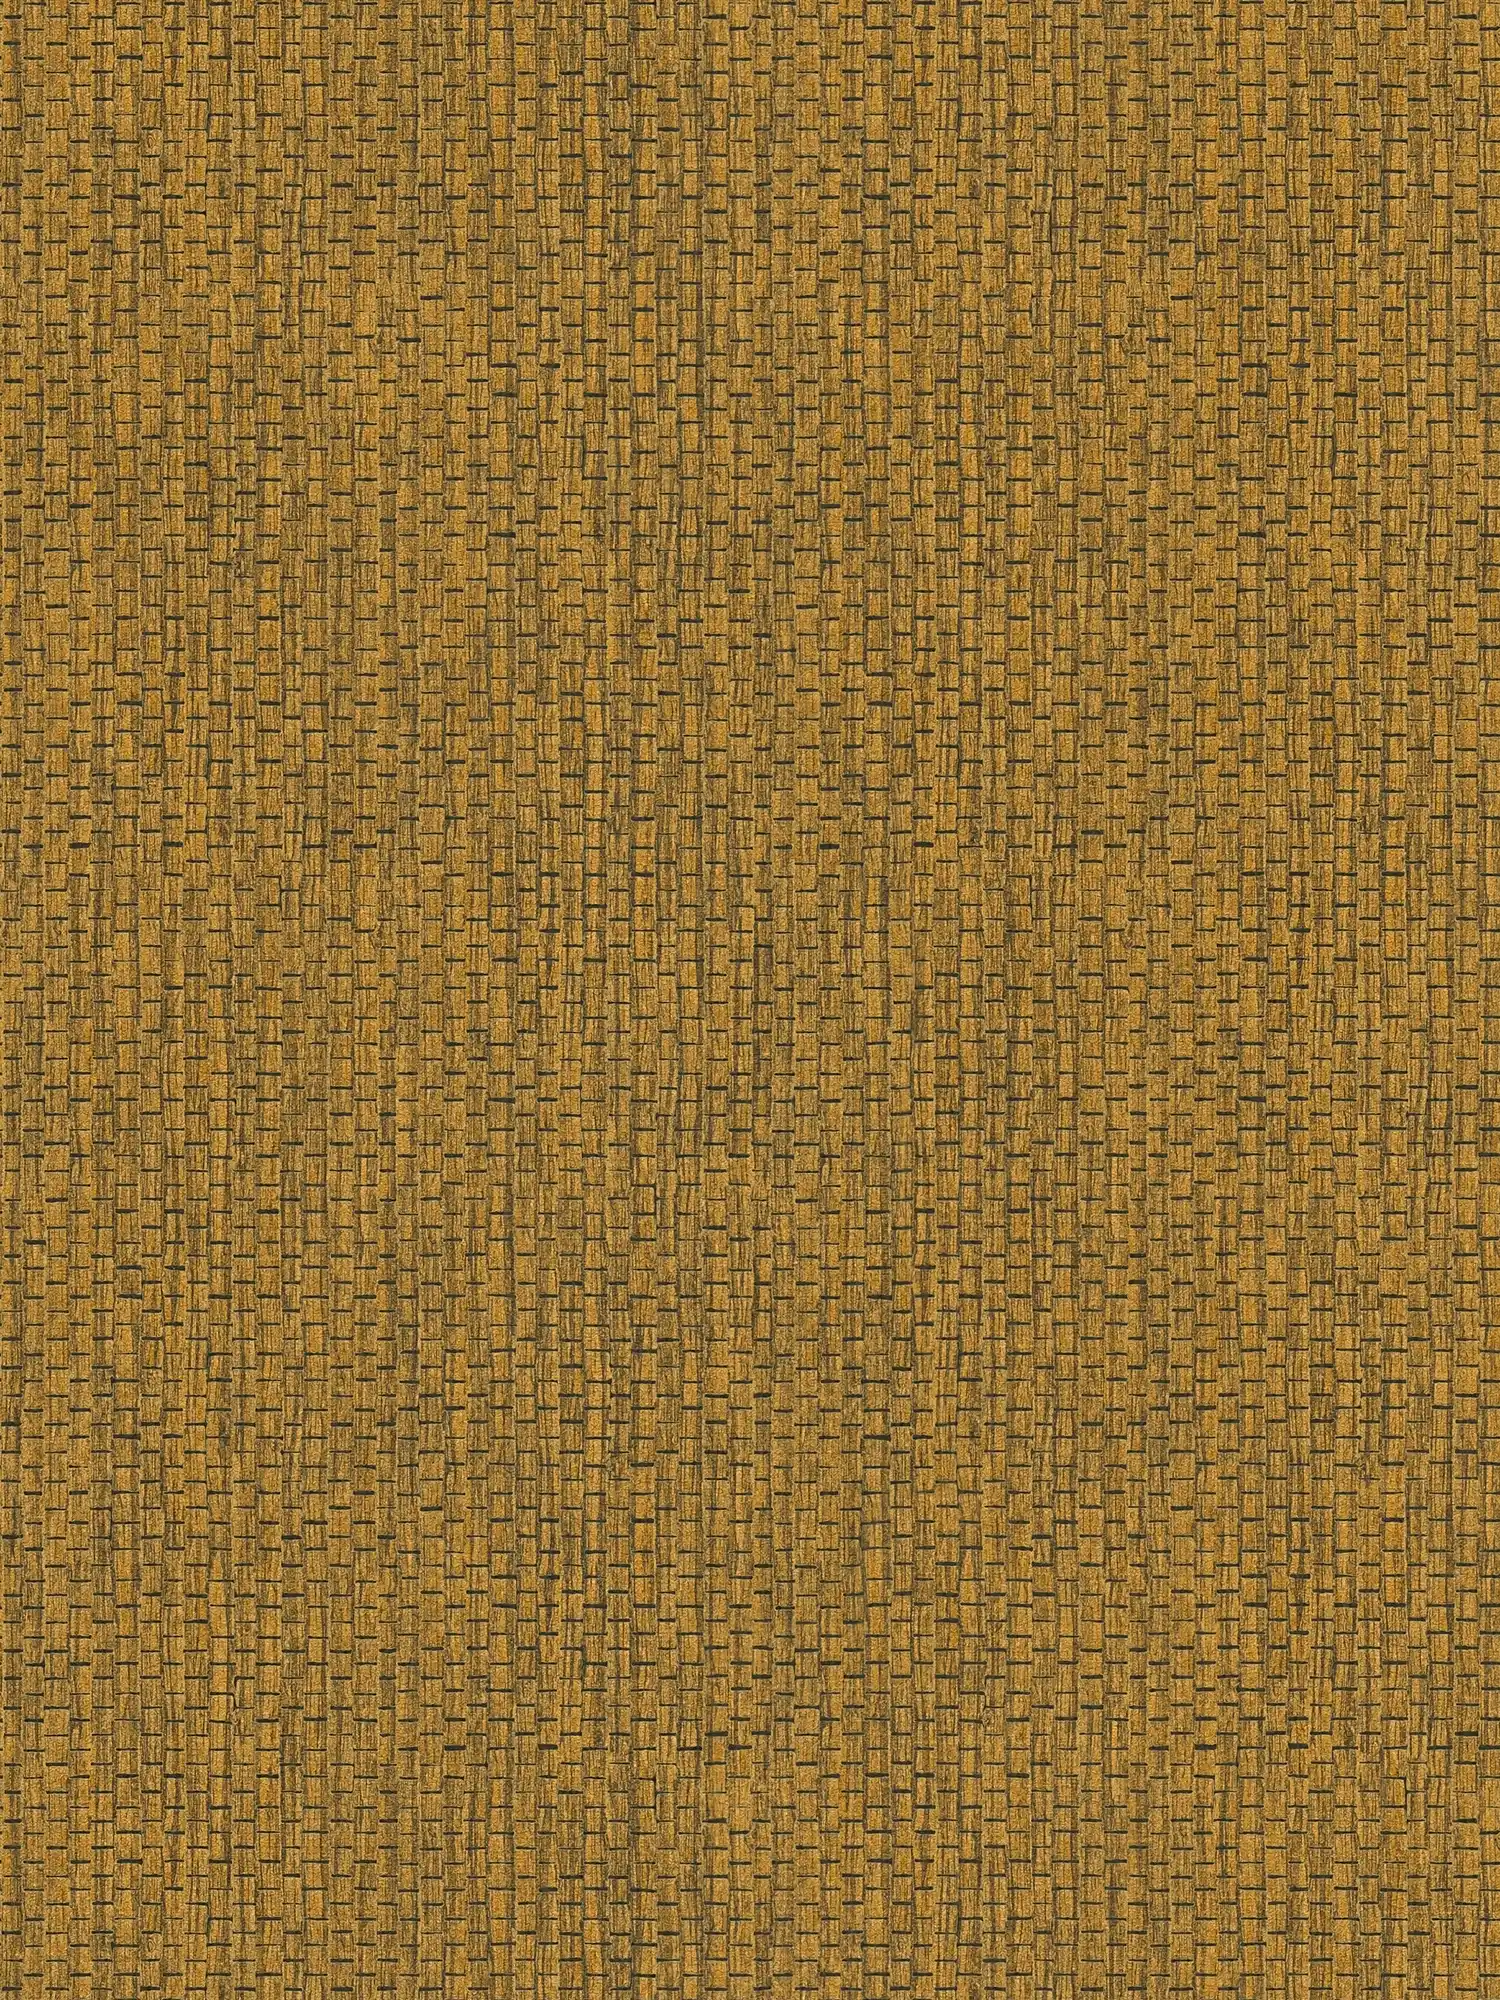 Papel pintado con diseño de alfombra de rafia - Marrón, Amarillo
